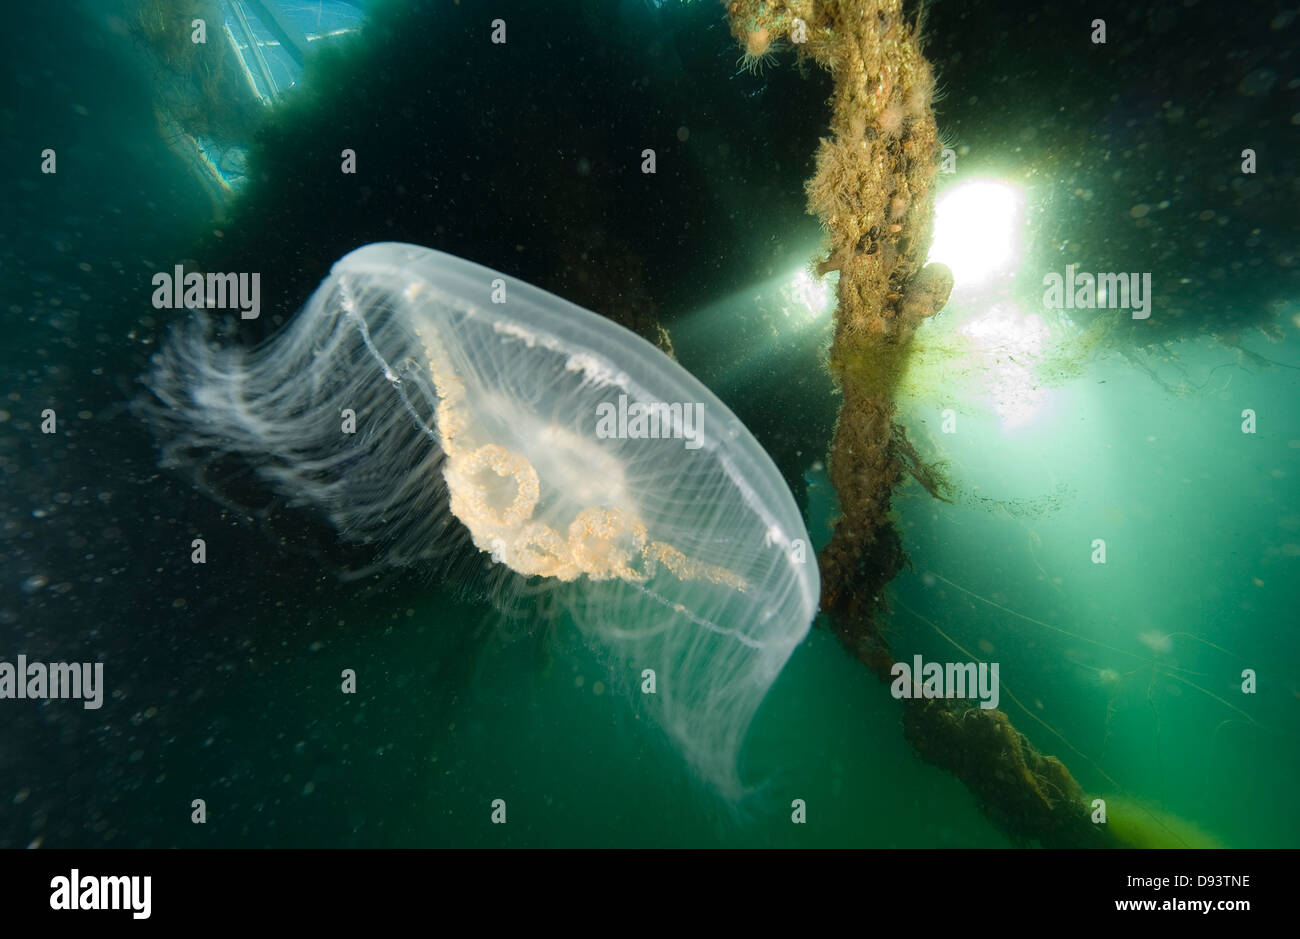 Common jellyfish underwater Stock Photo